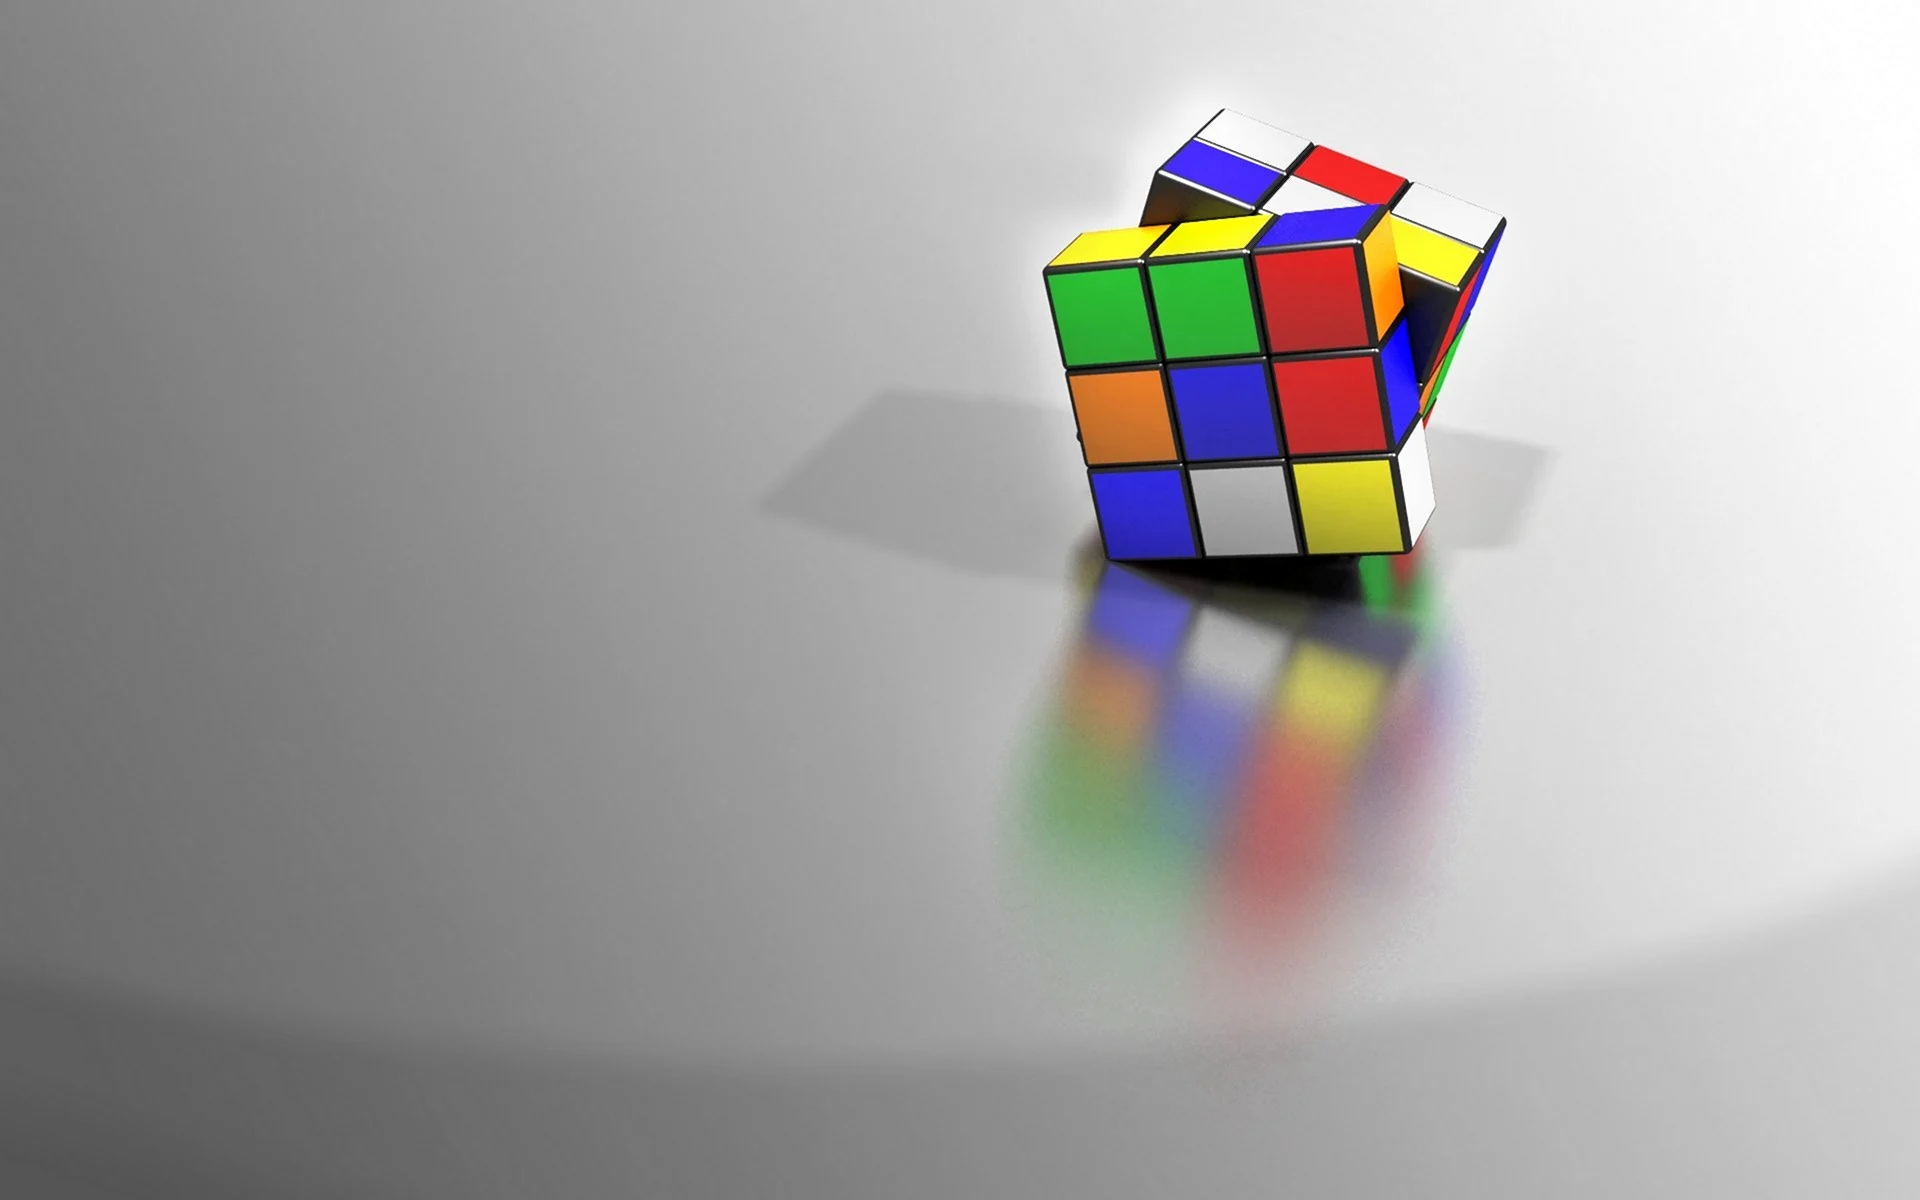 Кубик Рубика 3d